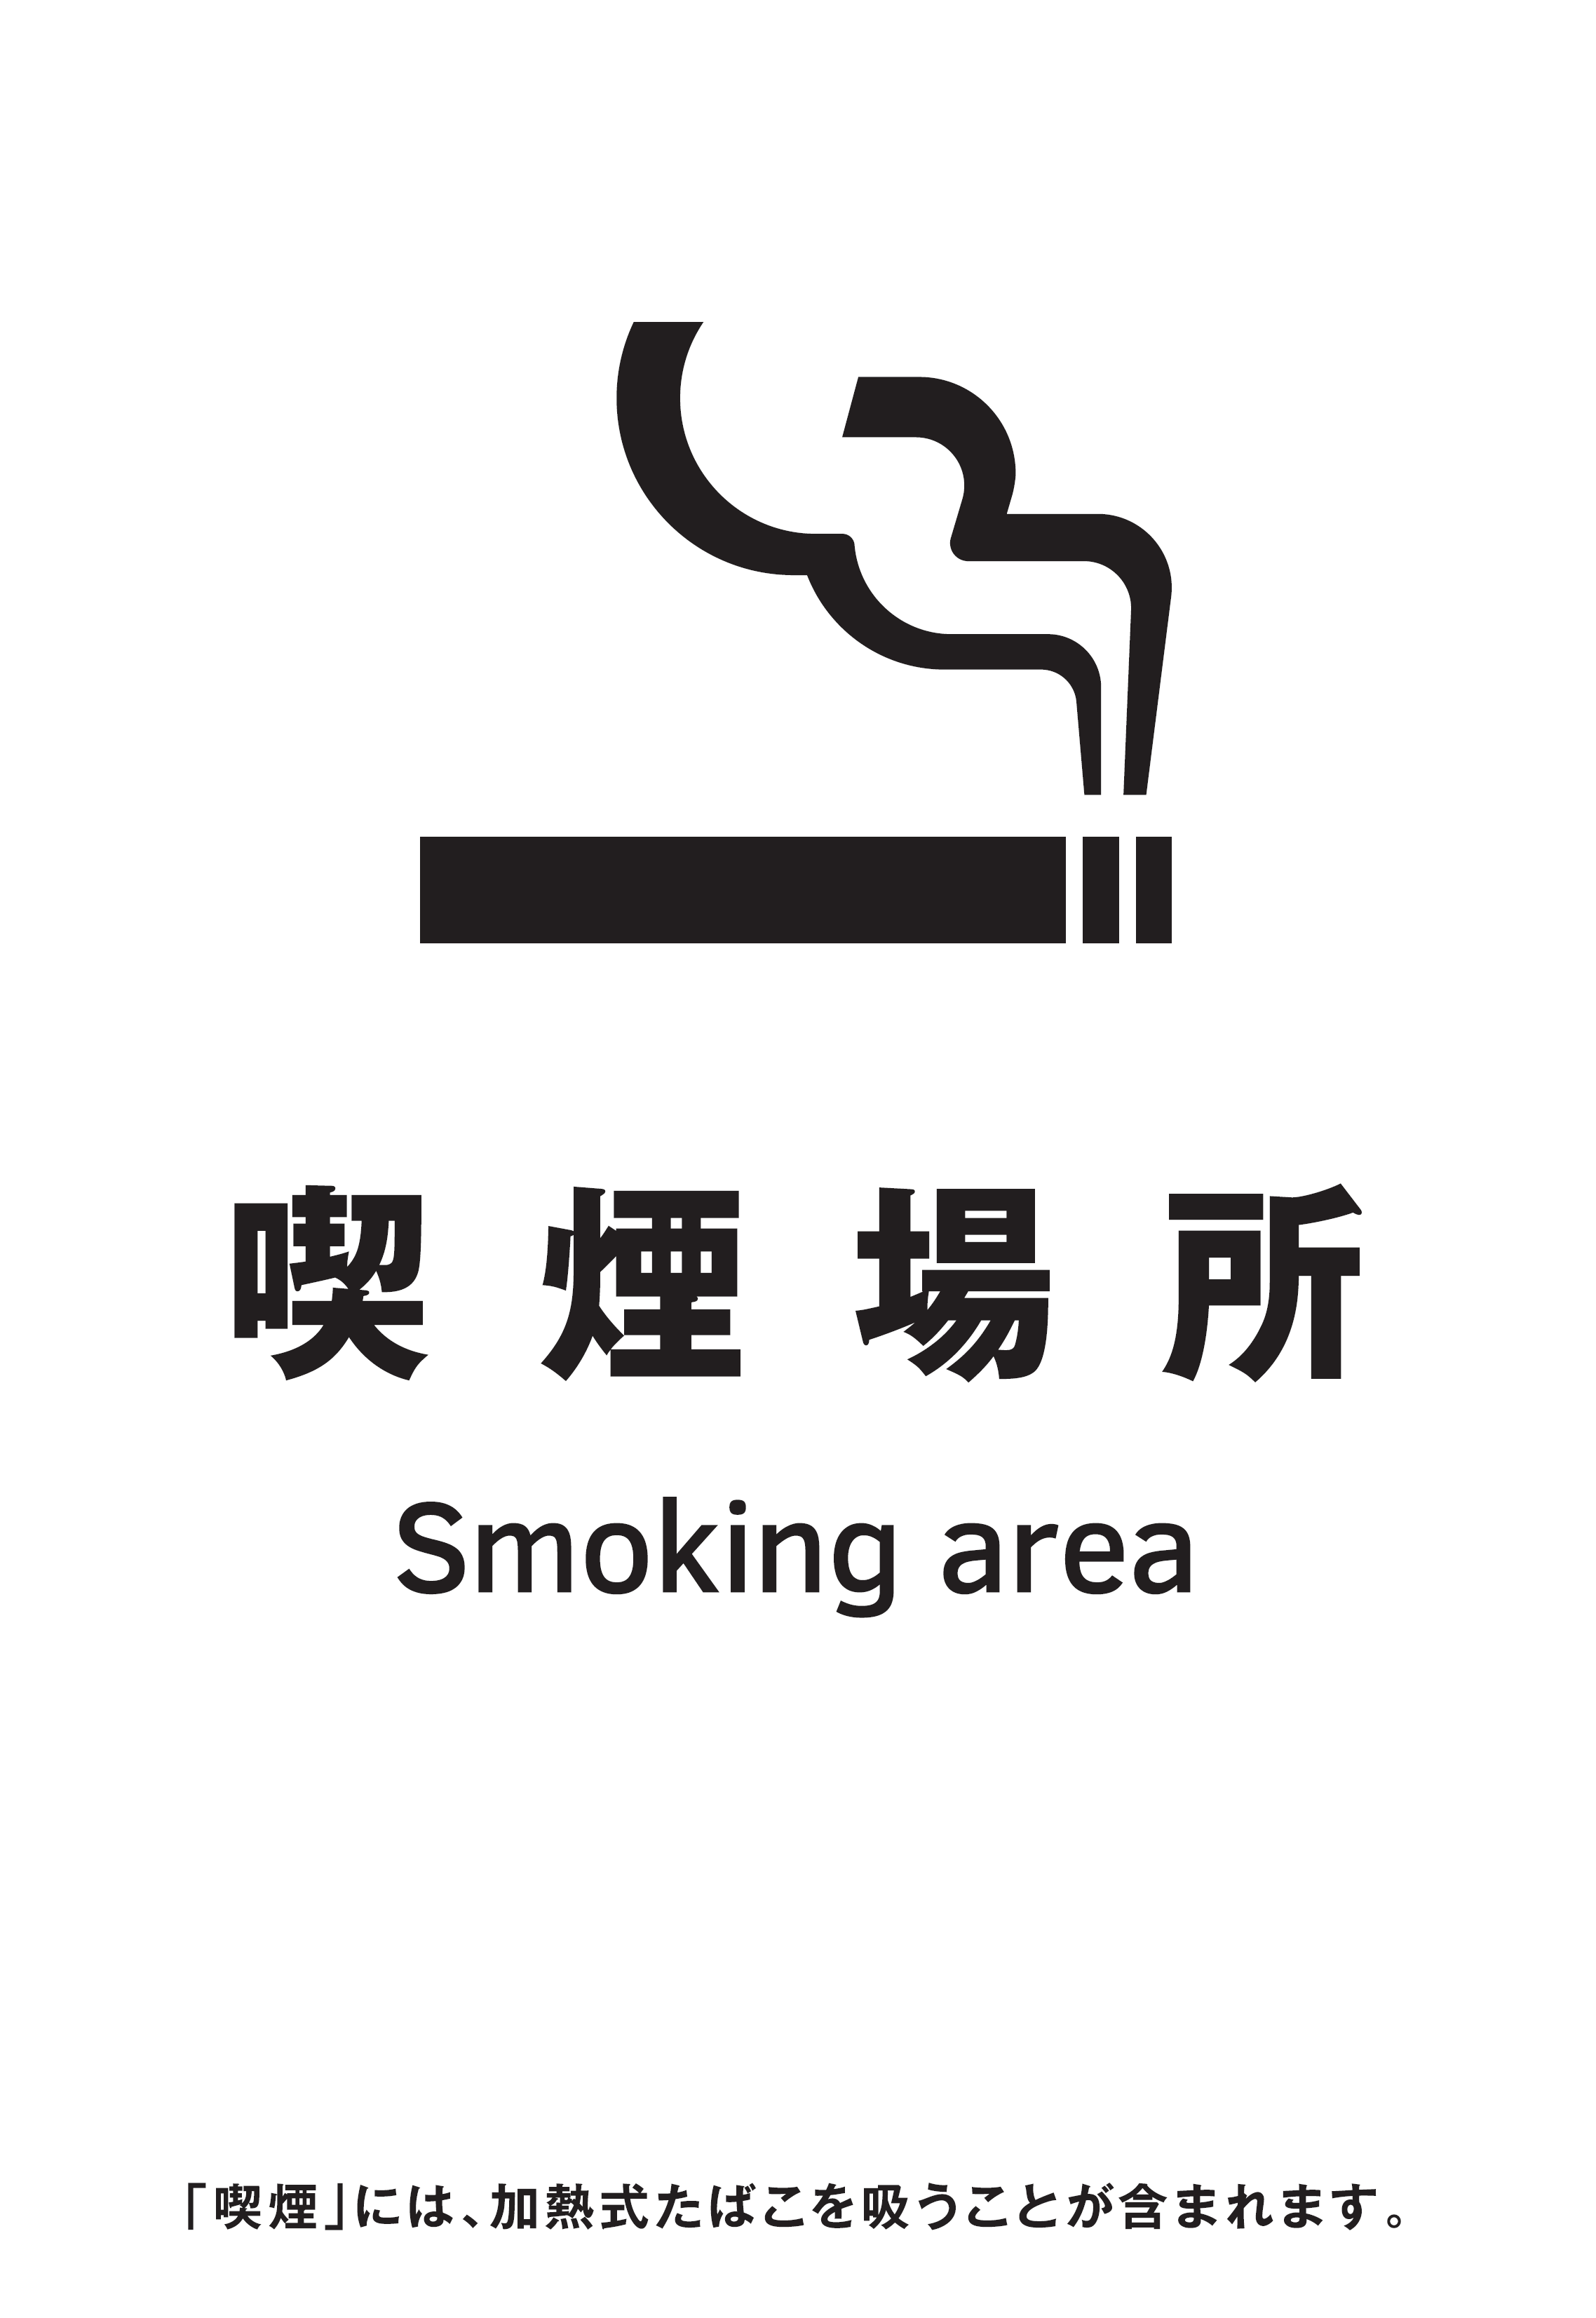 喫煙場所の標識